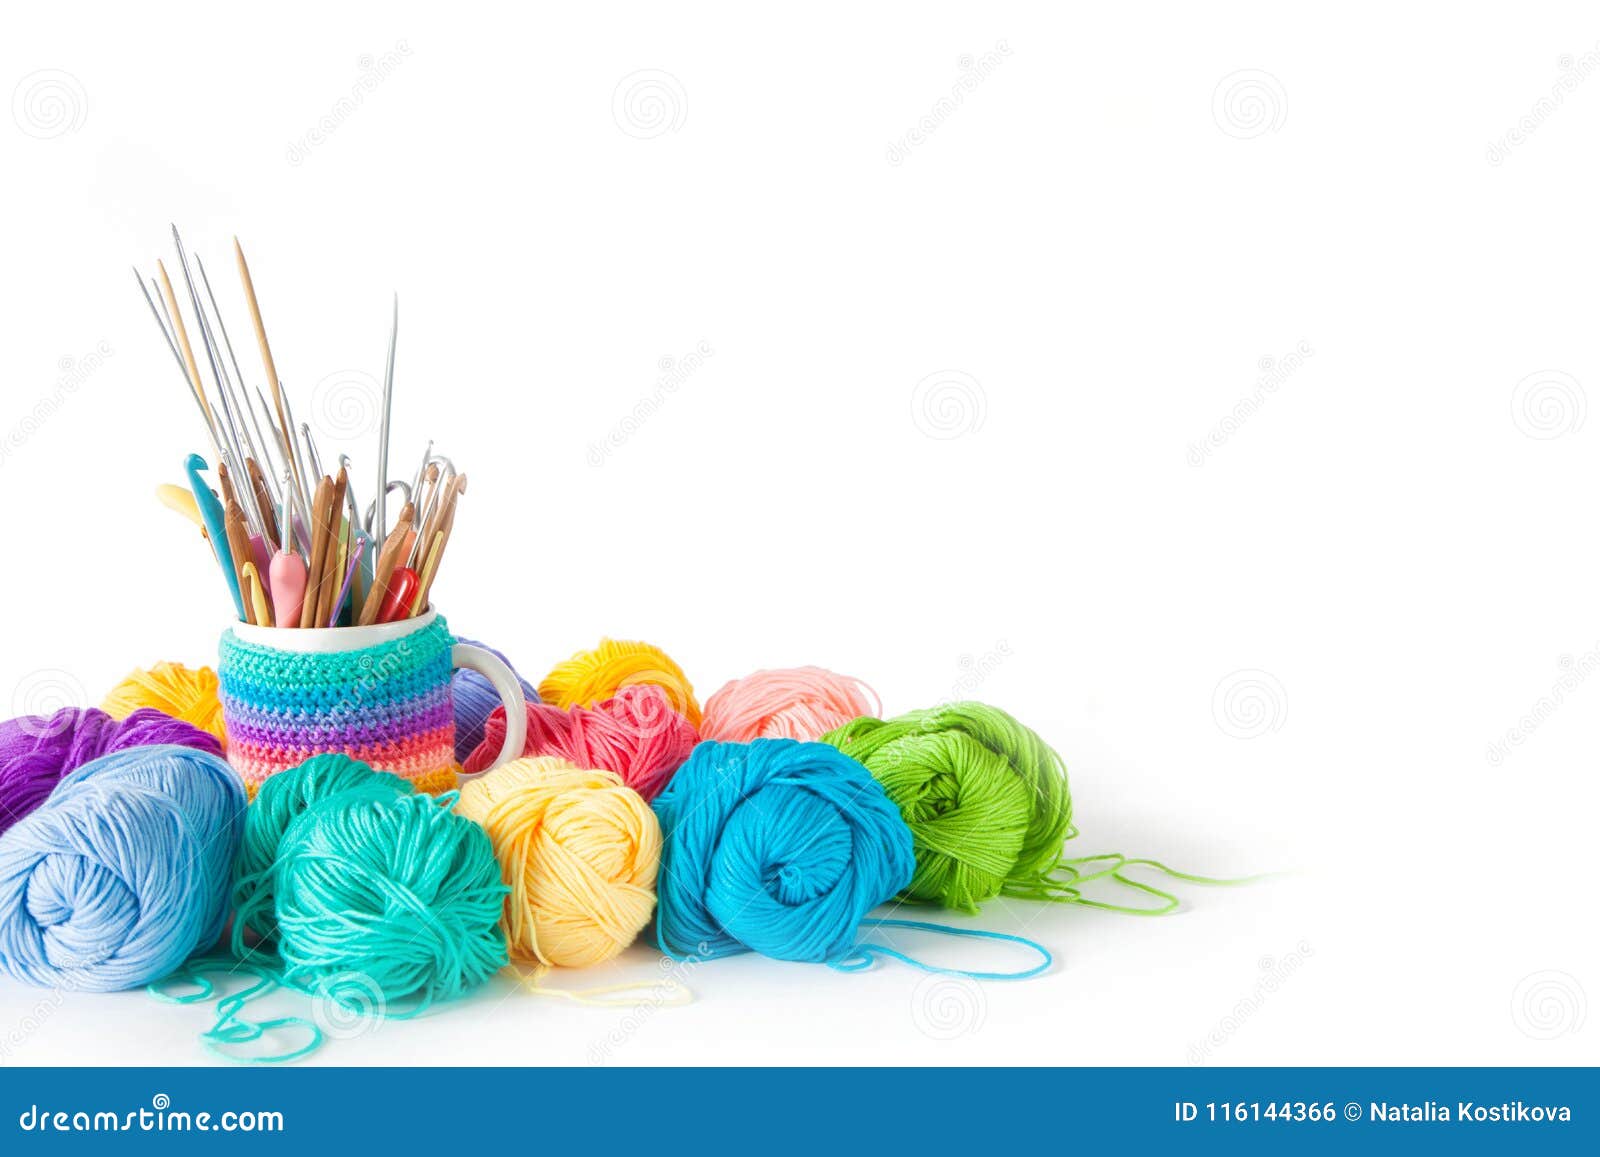 Yarn Balls For Knitting And Hooks Knitting Needles Stock